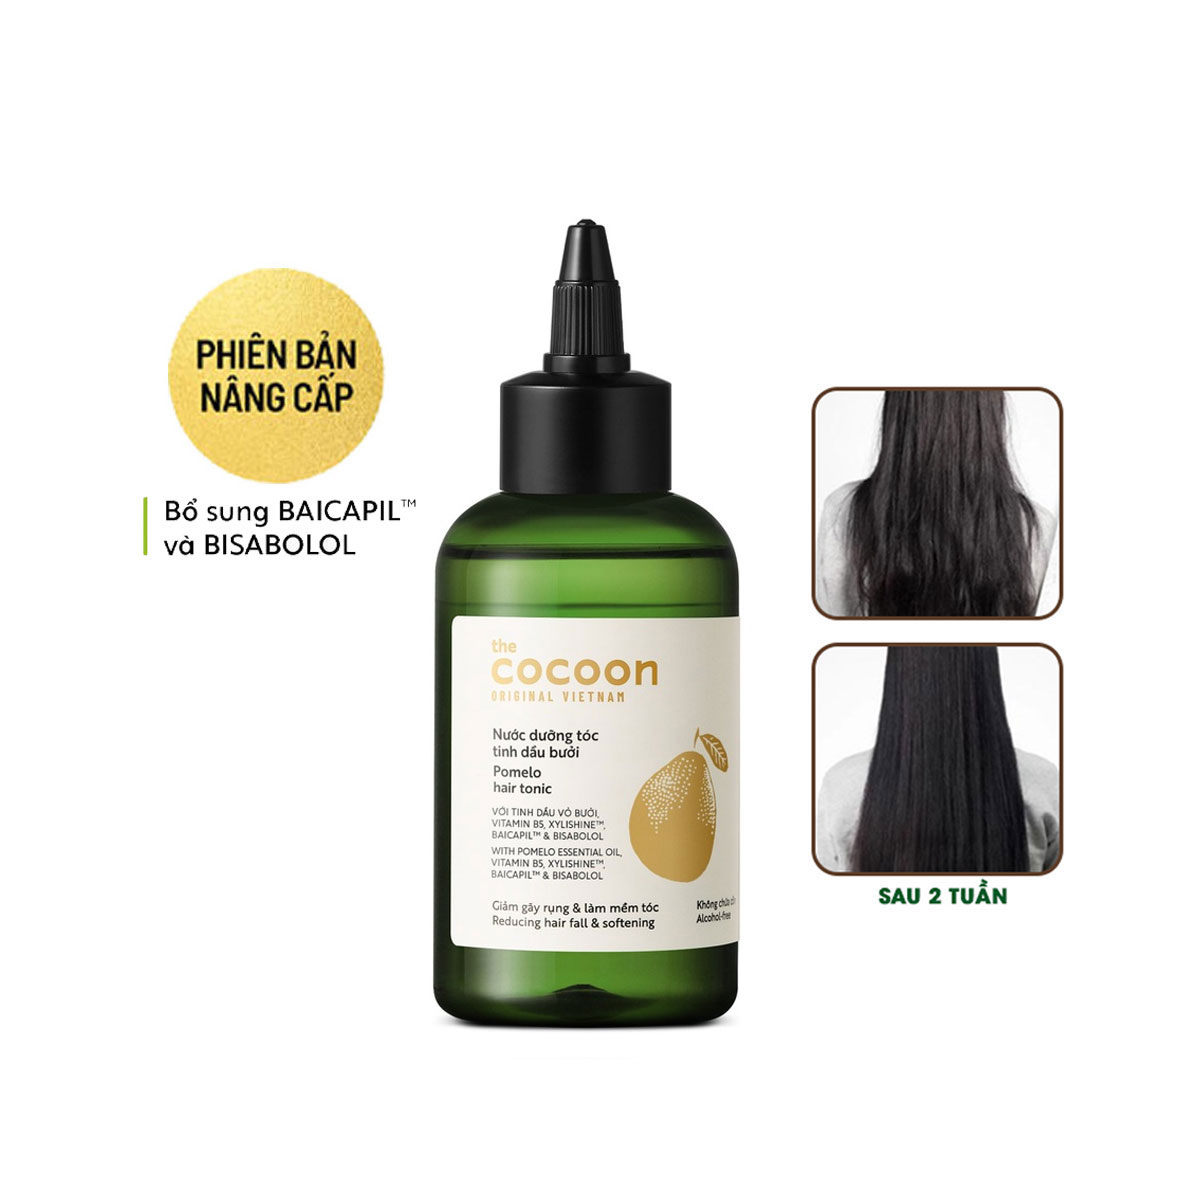 Nước dưỡng tóc tinh dầu bưởi Cocoon Bản Nâng Cấp giúp giảm gãy rụng hỗ trợ tóc 140ml